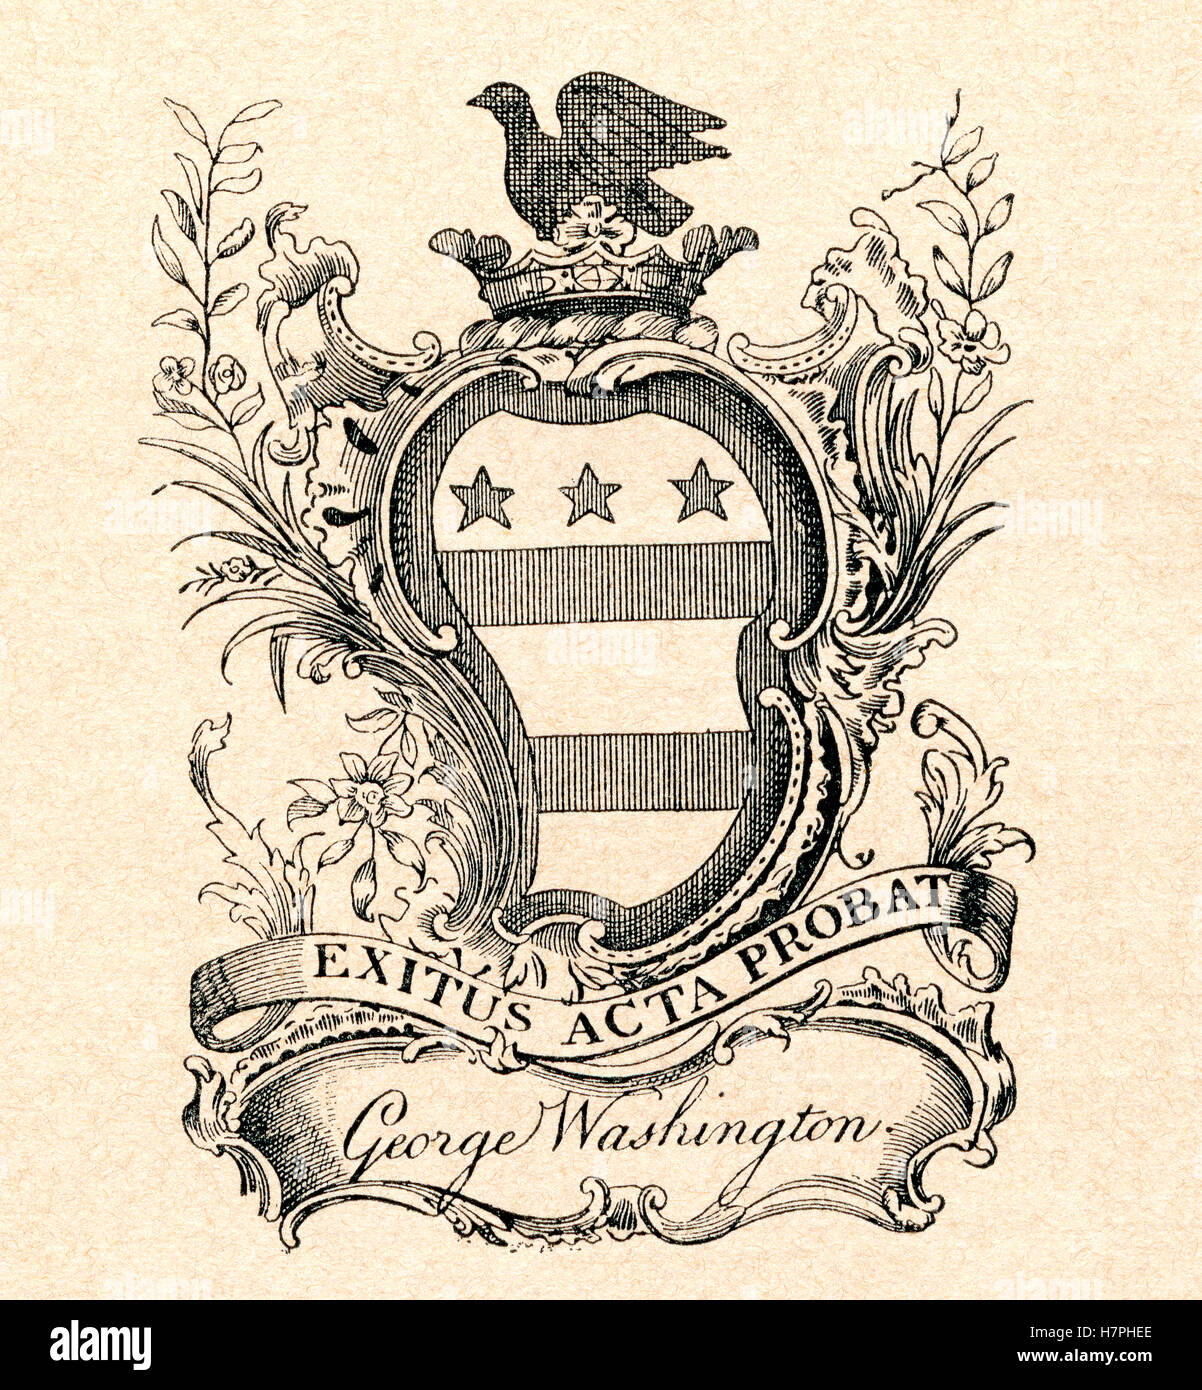 Ein Exlibris aka Ex Libris Stempel aus der Bibliothek von George Washington, Präsident der Vereinigten Staaten von Amerika. Ein ex Libris Stempel gibt Besitz. Stockfoto